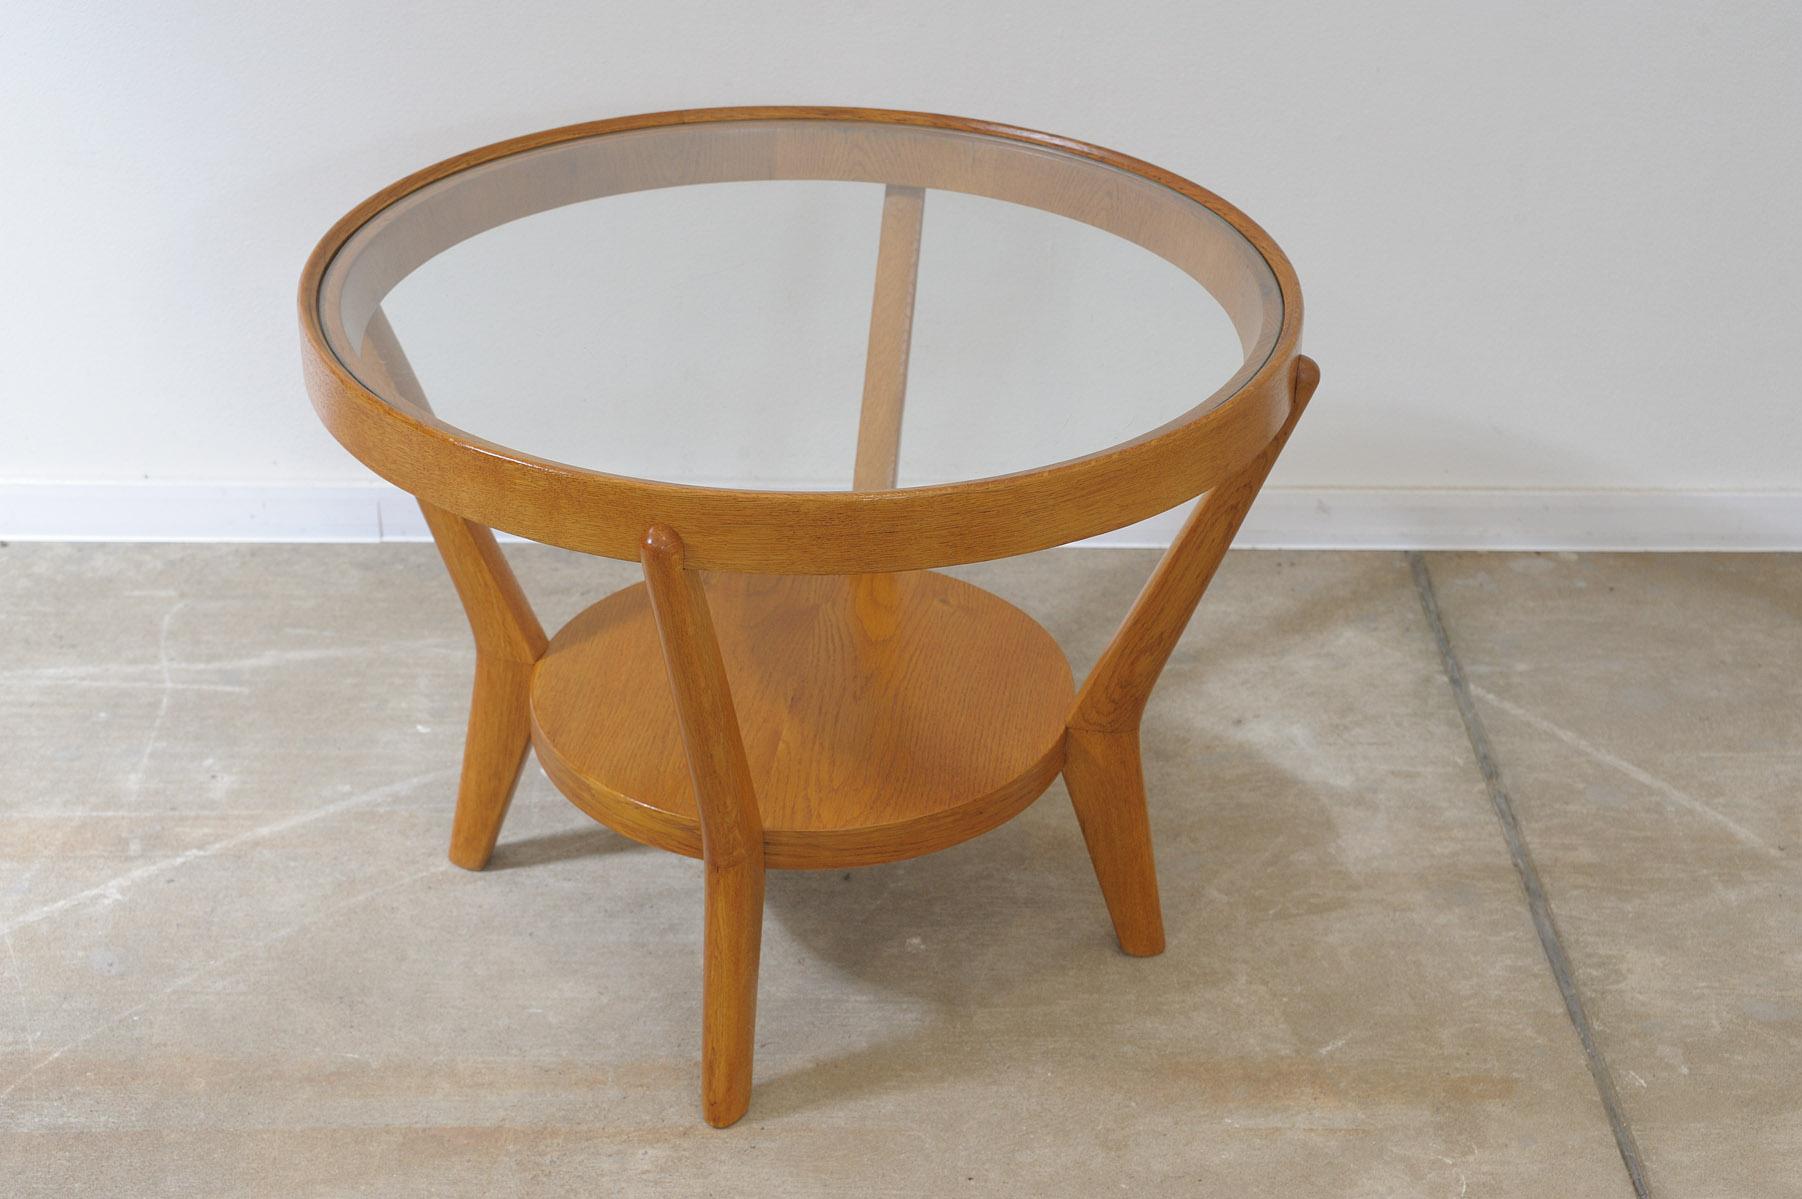 Table ronde émaillée conçue par les célèbres architectes Kropacek & Kozelka en 1944. Tchécoslovaquie. Elle peut être utilisée comme table basse ou table d'appoint. Chêne massif. En excellent état, entièrement rénové.

Hauteur : 56 cm

Diamètre : 73